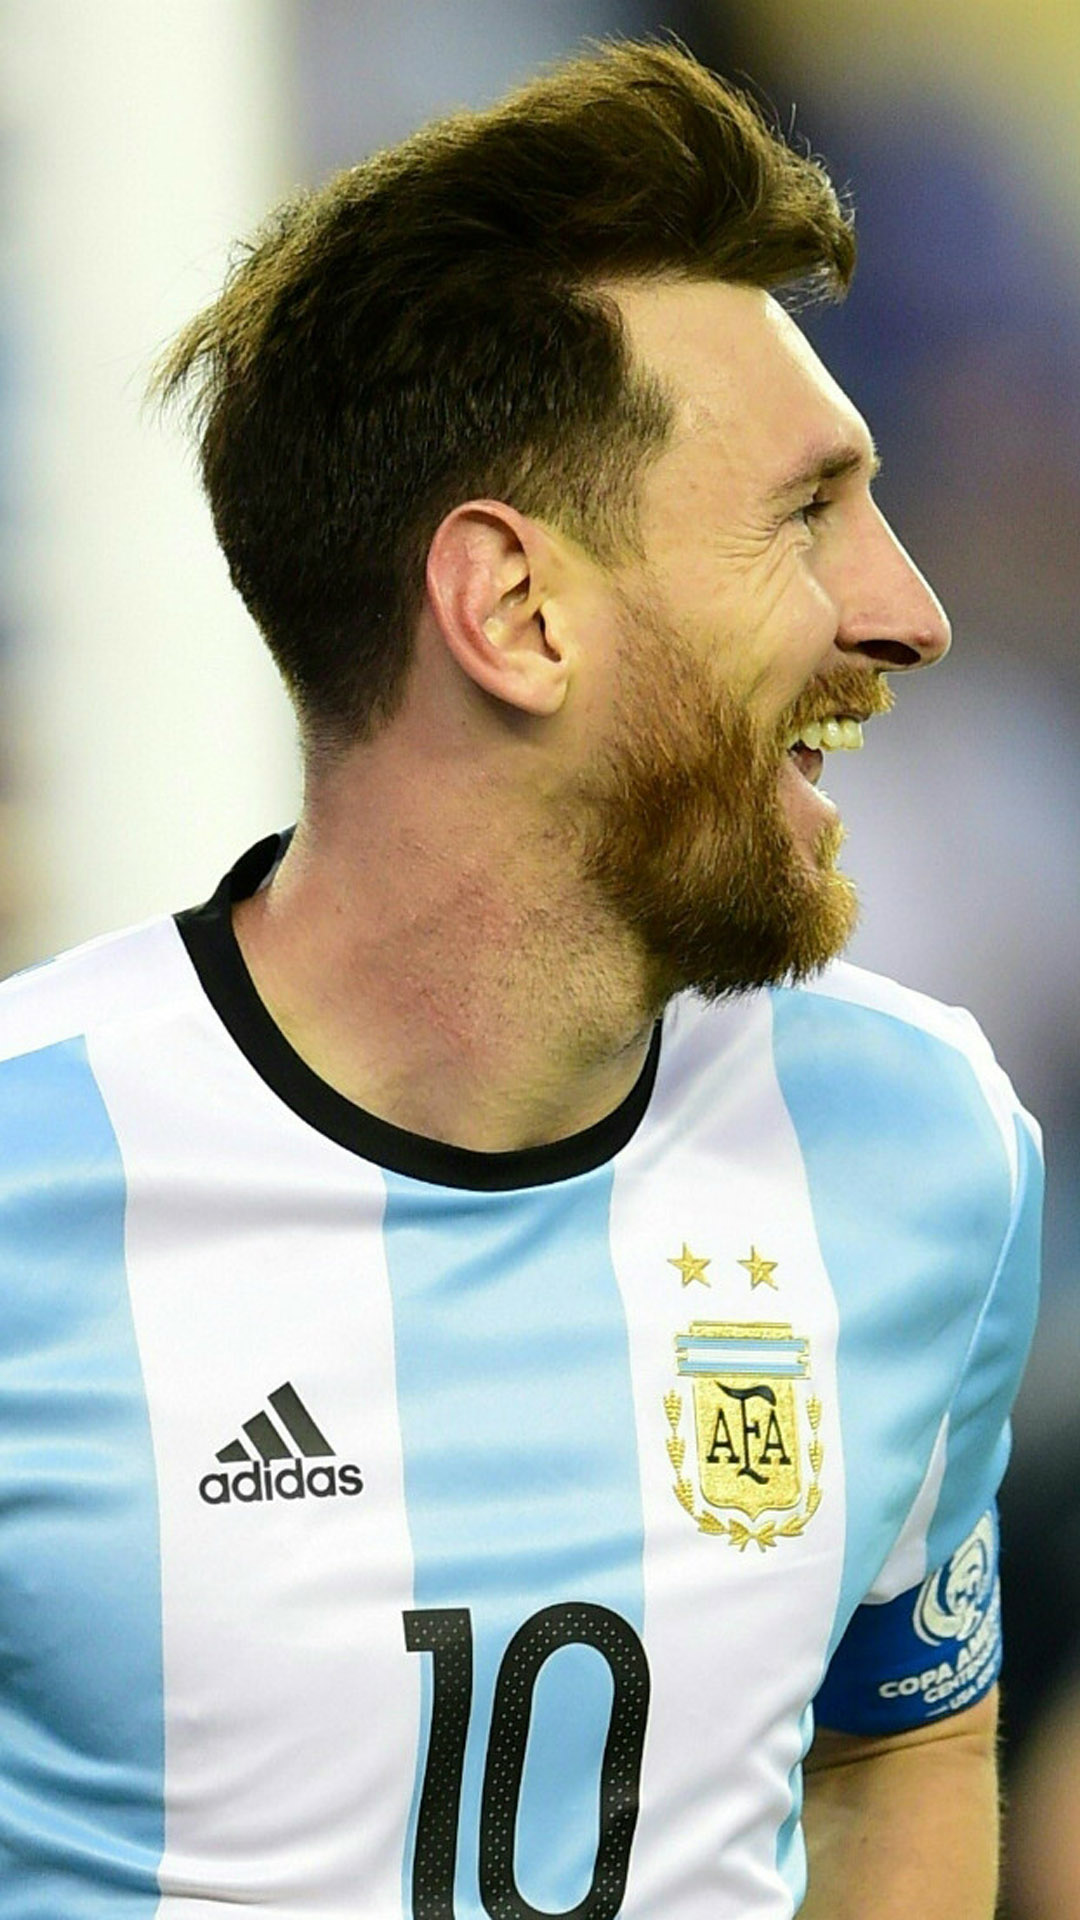 Messi: Hãy chiêm ngưỡng vẻ đẹp hoàn hảo của anh chàng sân cỏ huyền thoại này qua bức ảnh chất lượng cực cao 4K Ultra HD. Bất kỳ ai yêu bóng đá đều không thể bỏ qua cơ hội này.